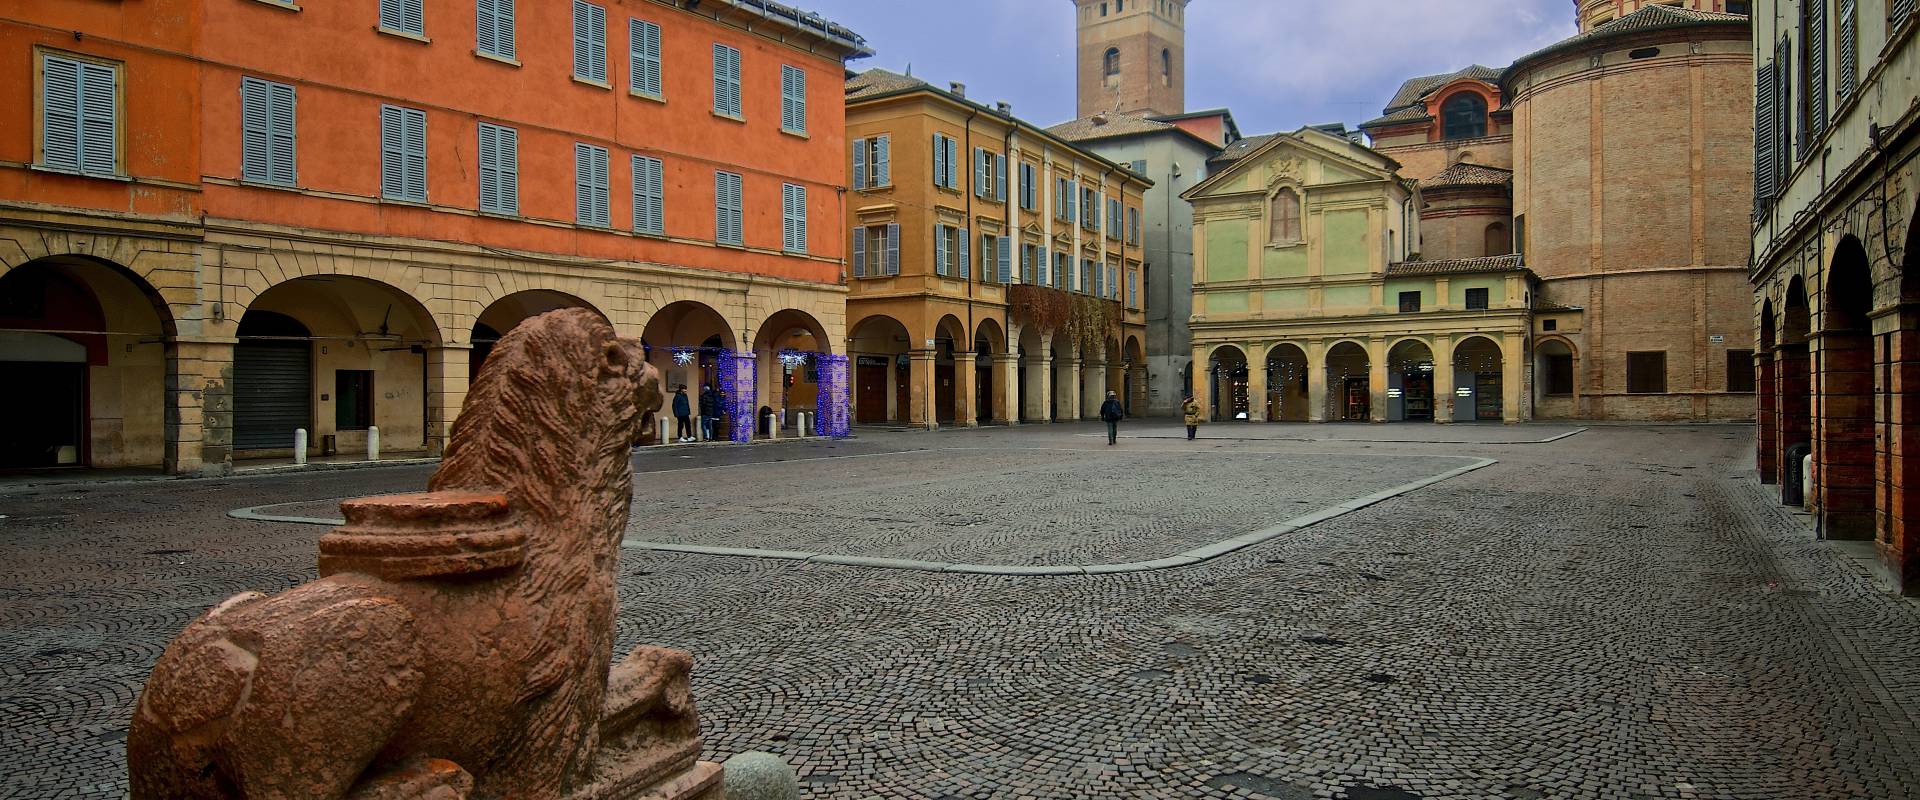 Piazza San Prospero o "Piasa cecà" foto di Caba2011